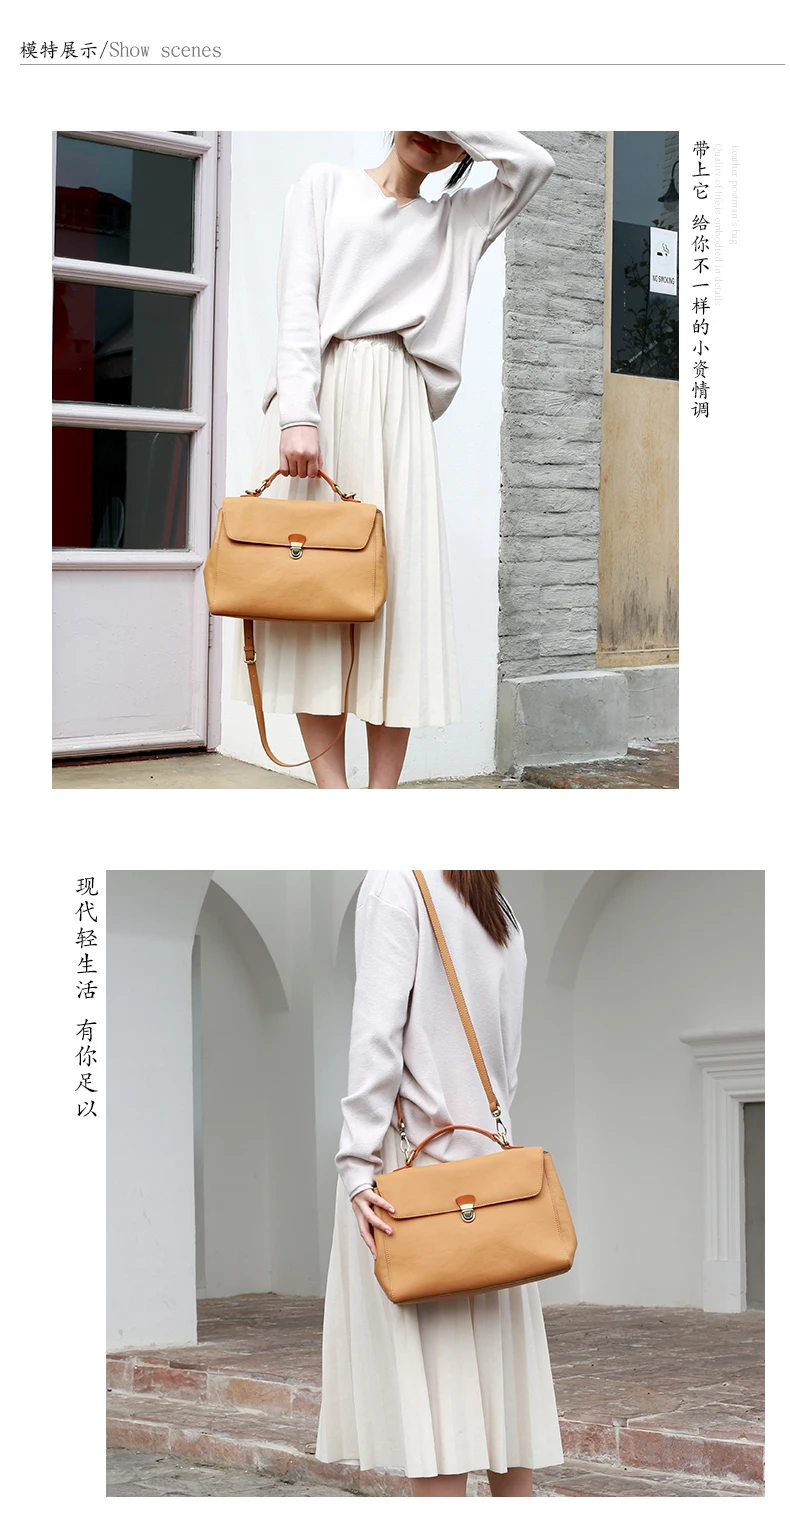 HANSOMFY новые оригинальные женские сумки ручной работы женская сумка-мессенджер ретро кожаная сумка на плечо простая сумка-мессенджер с замком сумки-портфели